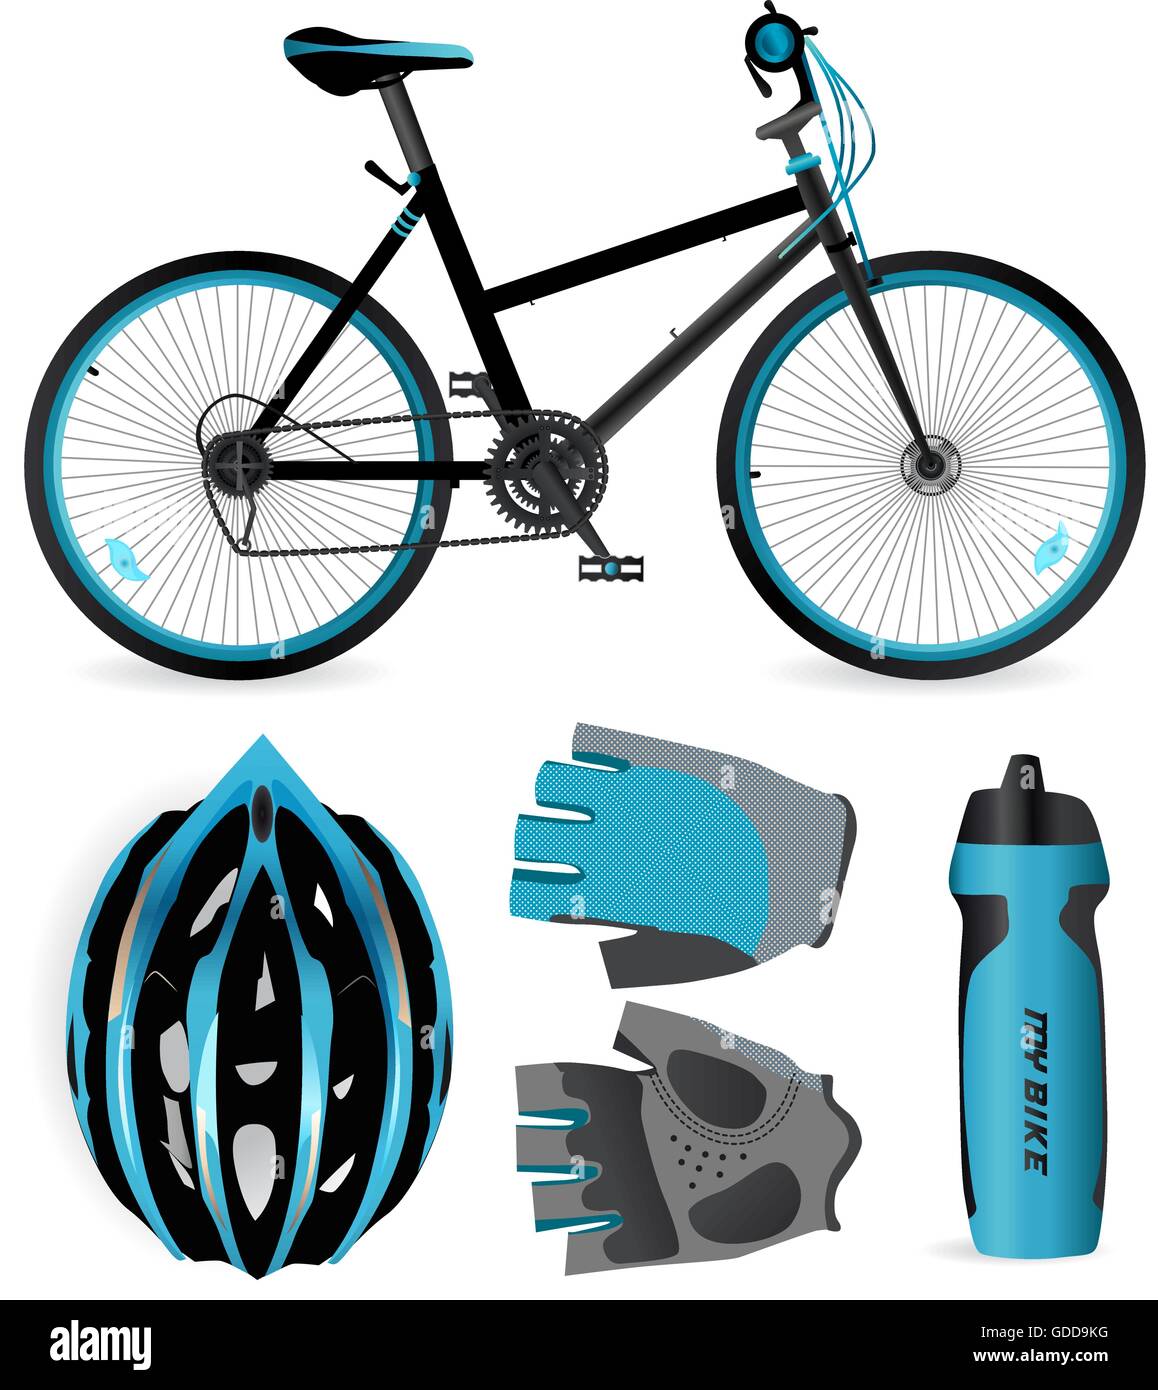 Fahrrad oder Fahrrad-Zubehör. Helm, Handschuhe und Wasserflasche Stock Vektor